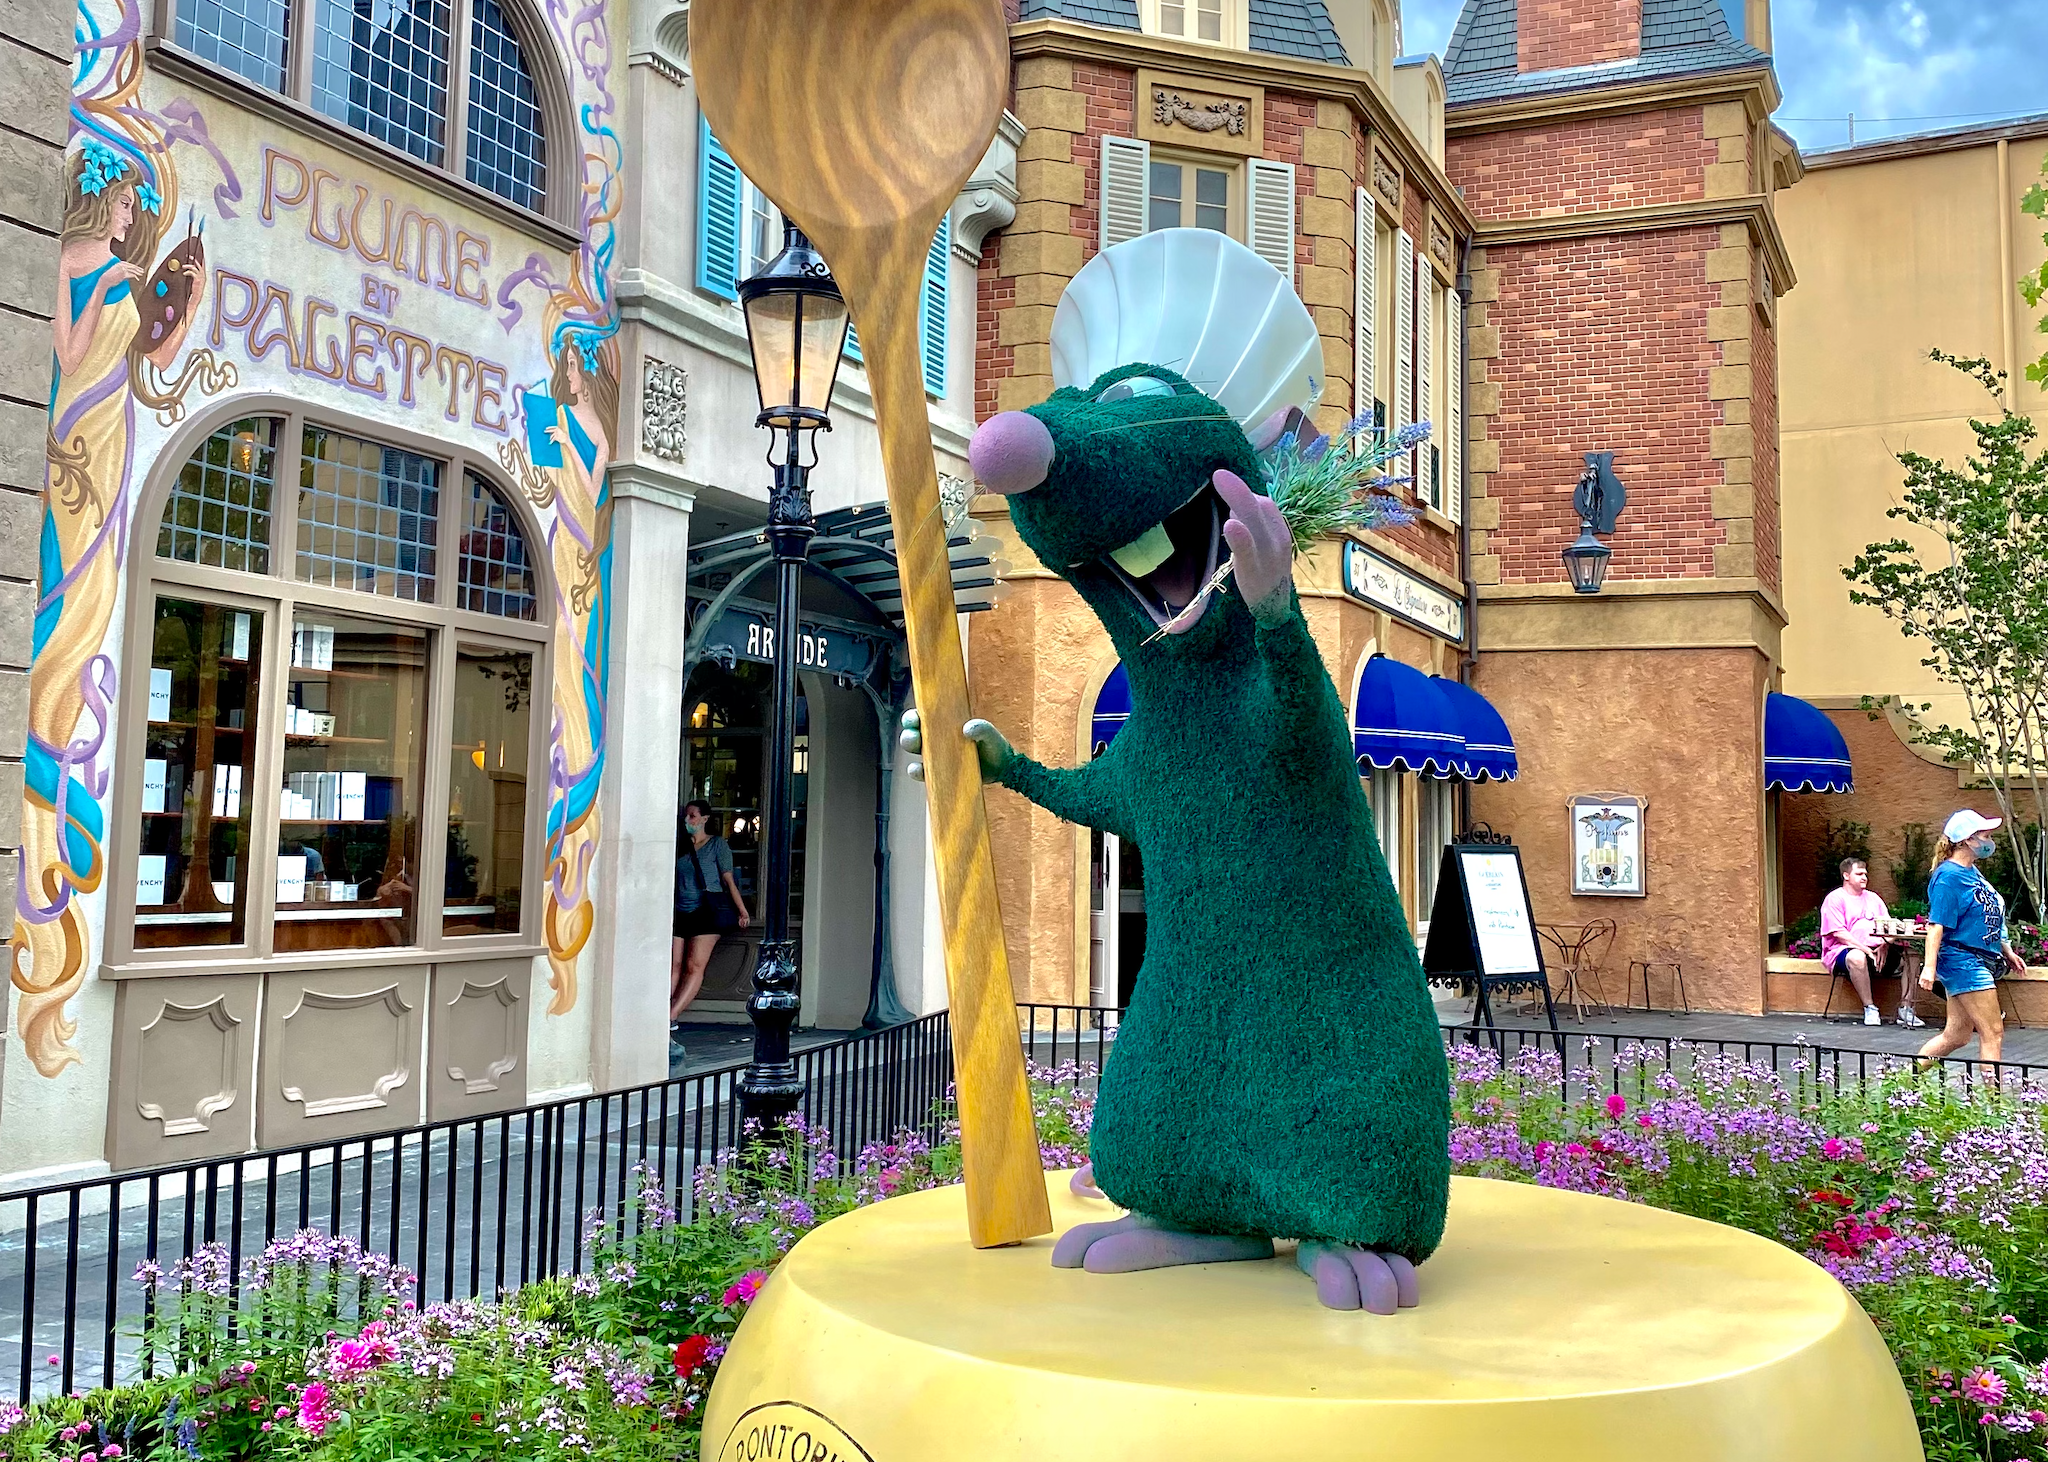 Remy de la estatua de Ratatouille de Disney en el pabellón de Francia de Epcot